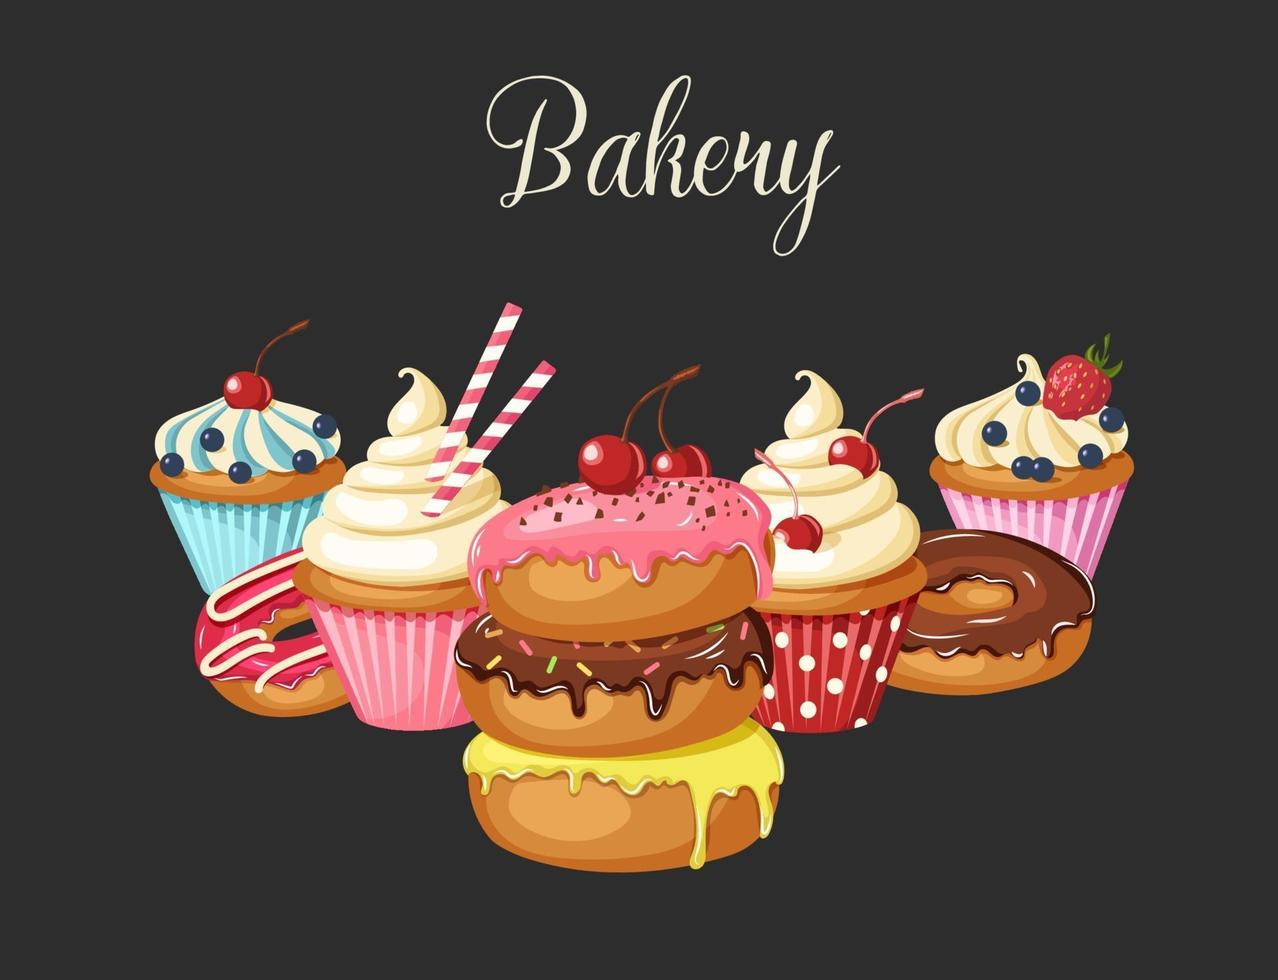 Fondo de panadería dulce con donuts glaseados, tarta de queso y cupcakes con cereza, fresas y arándanos. letras hechas a mano. desierto para el menú. diseño de alimentos. vector